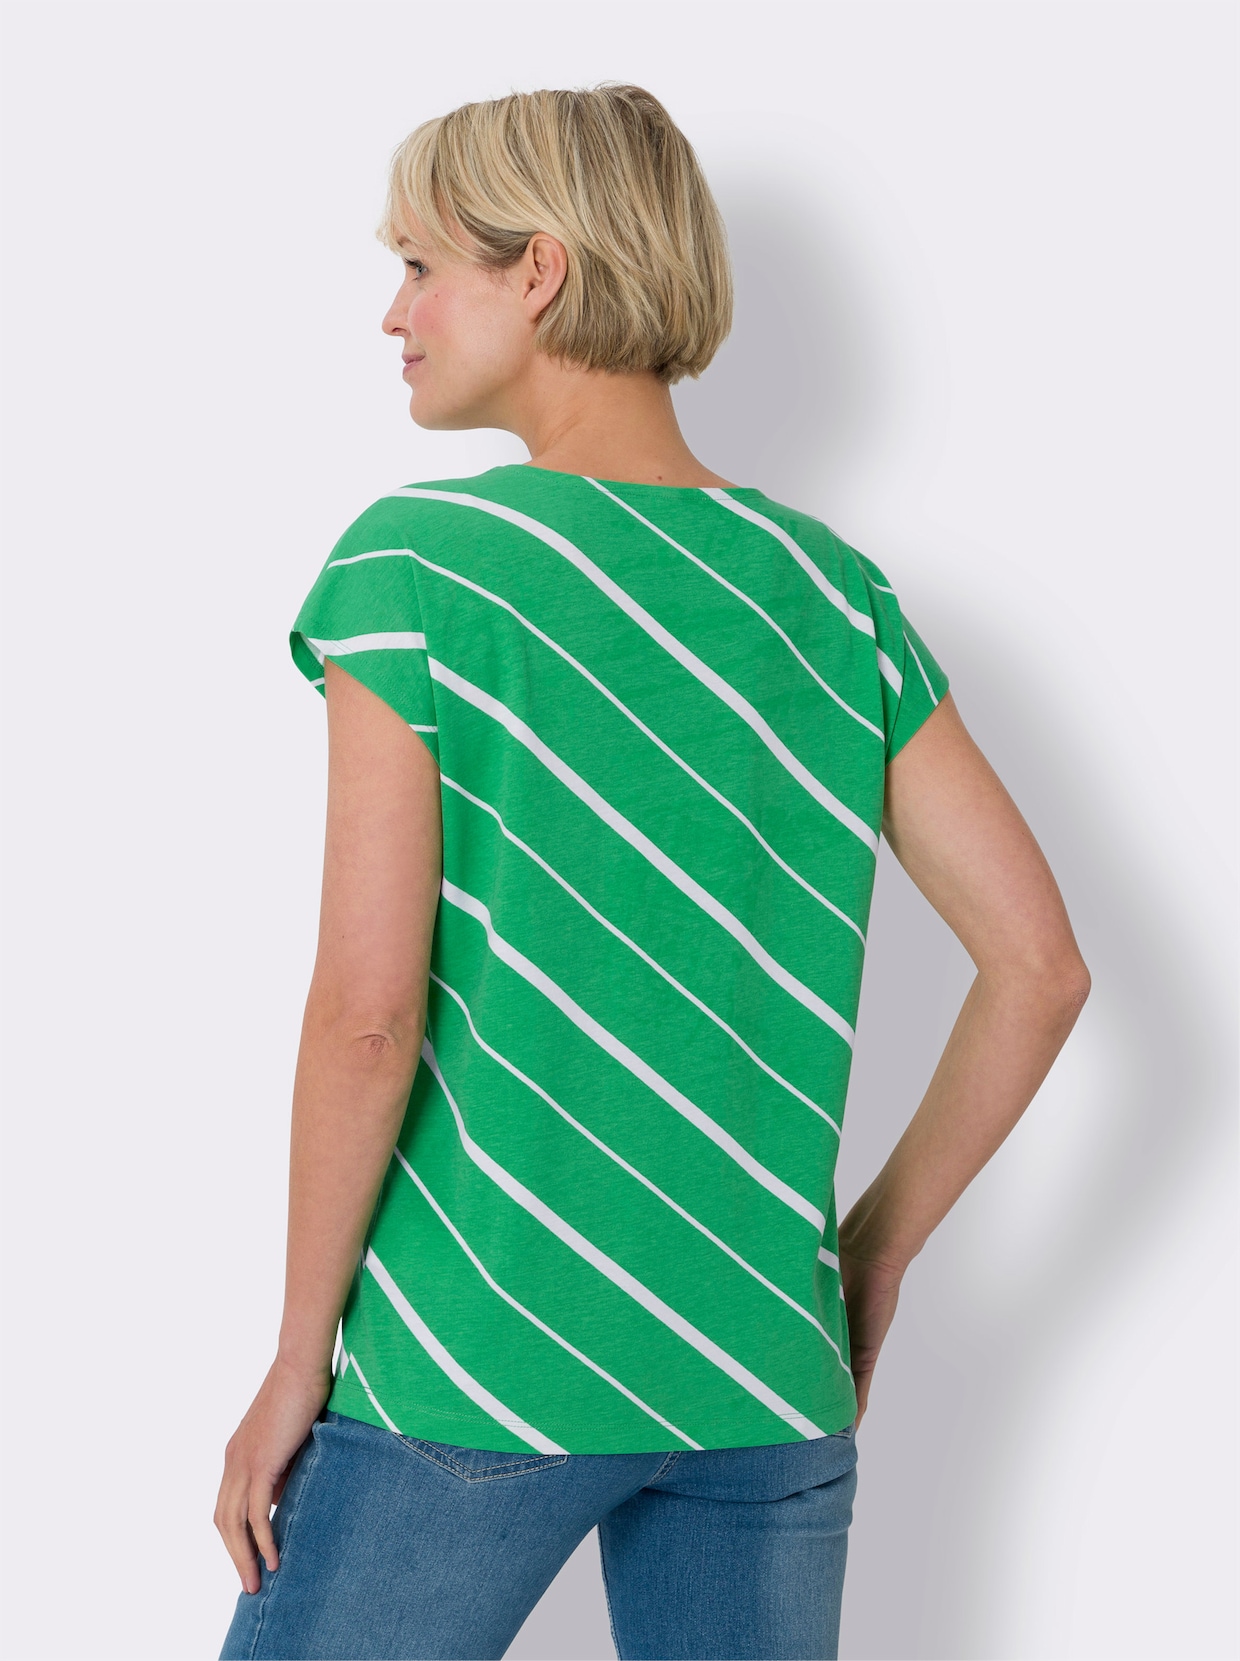 Tričko s krátkým rukávem - trávově zelená-bílá-proužek